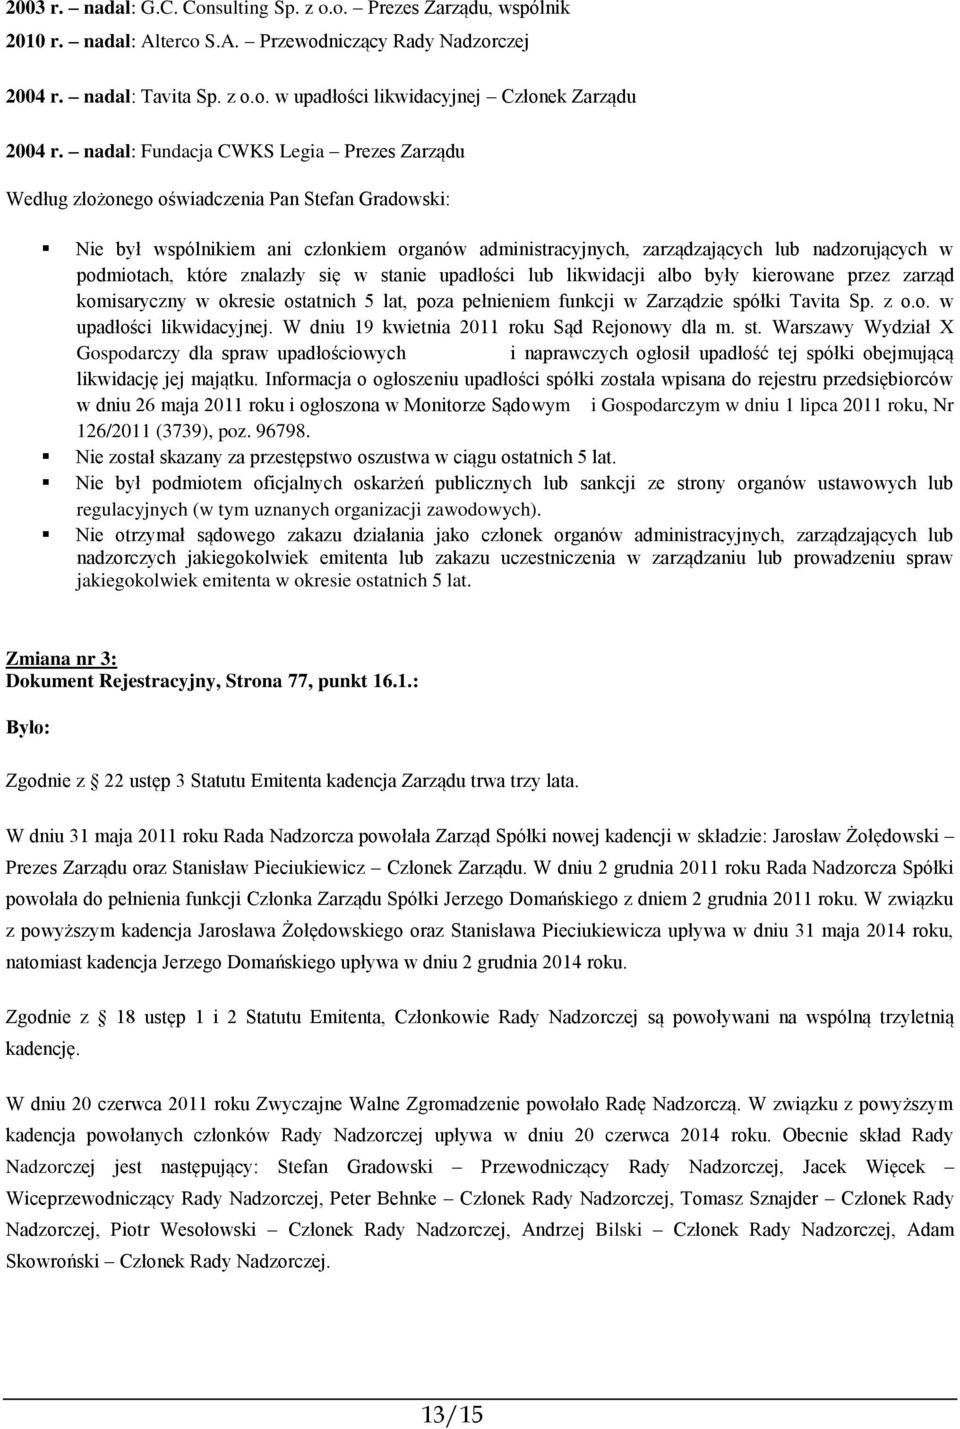 W dniu 19 kwietnia 2011 roku Sąd Rejonowy dla m. st. Warszawy Wydział X Gospodarczy dla spraw upadłościowych i naprawczych ogłosił upadłość tej spółki obejmującą likwidację jej majątku.